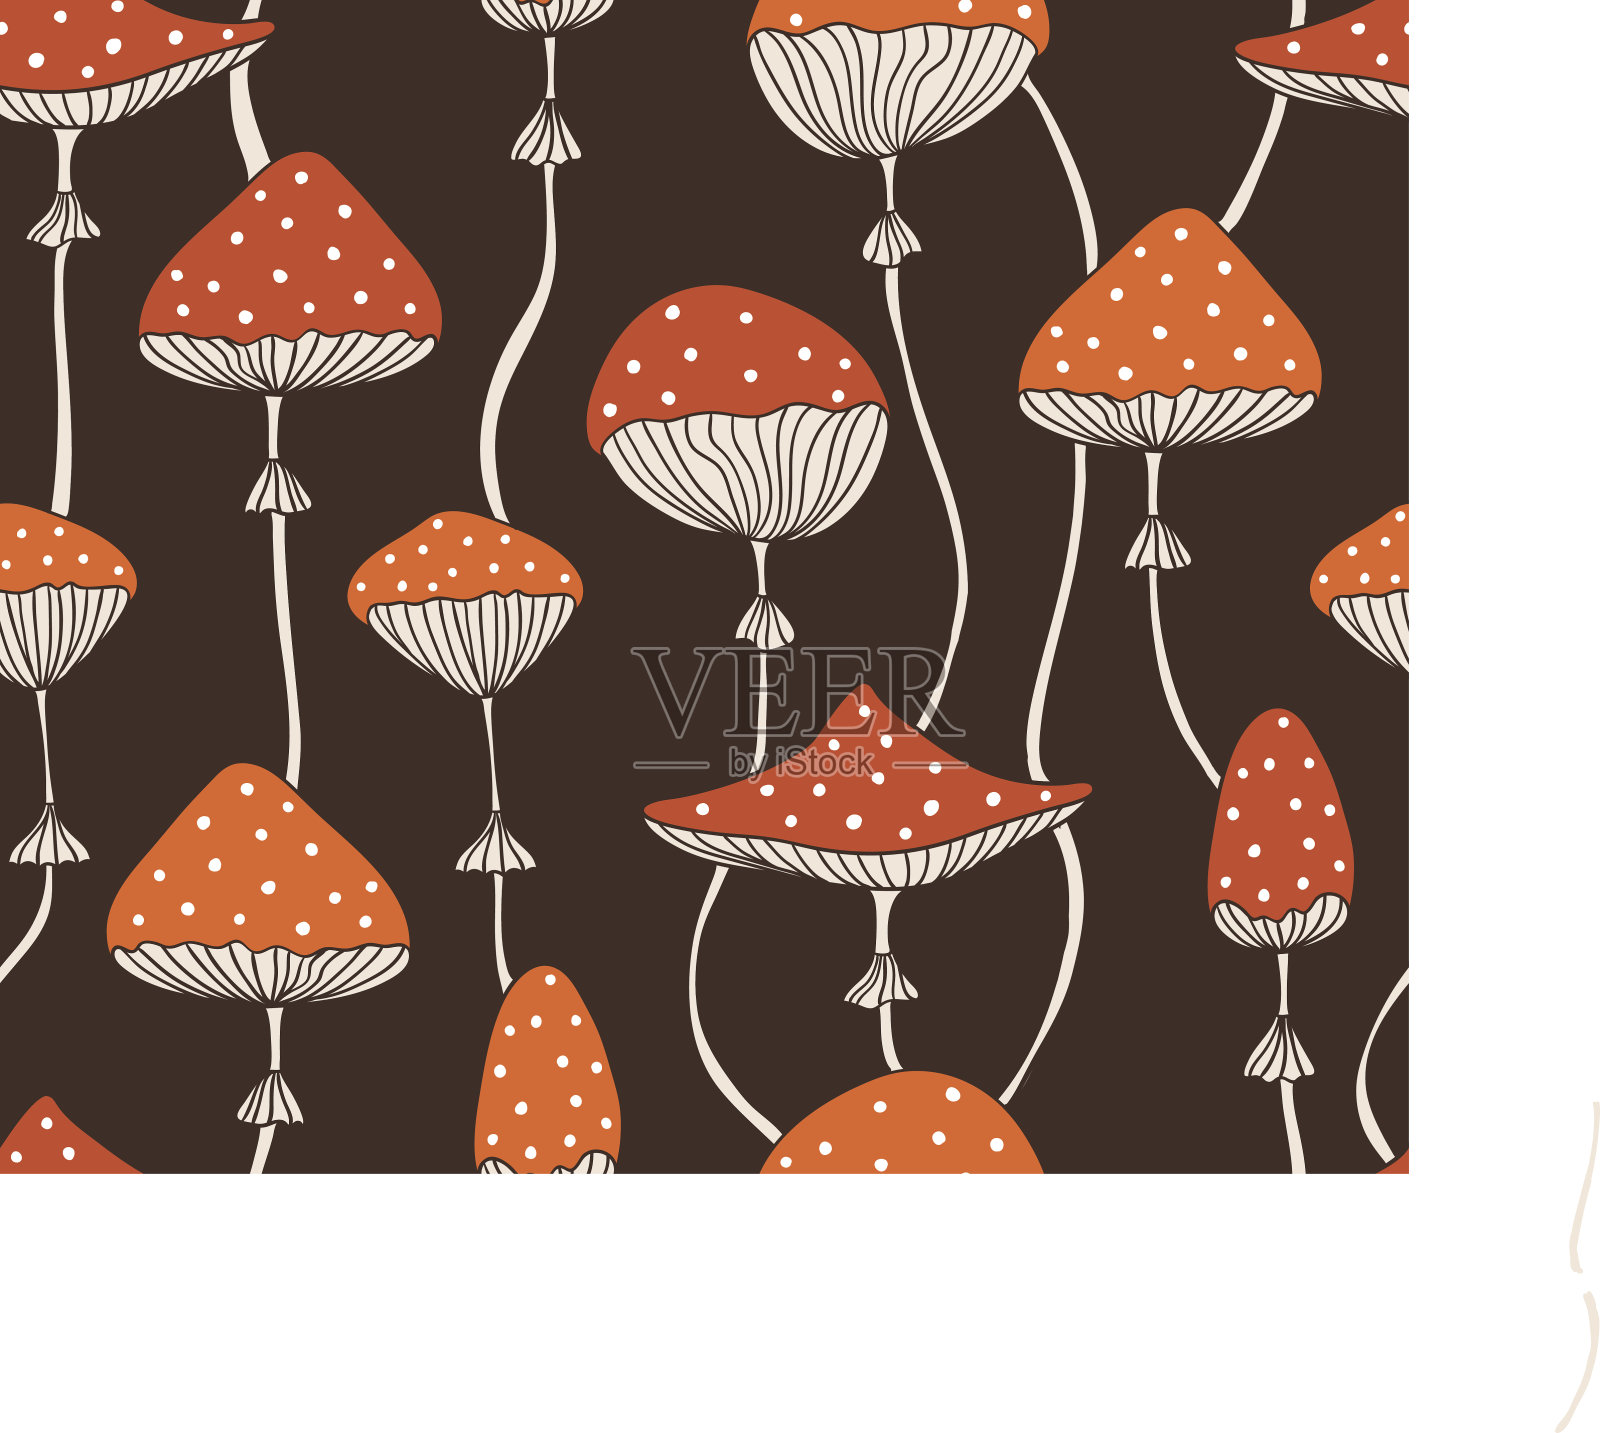 可爱的红色伞菇无缝图案。涂鸦风格的墙纸或织物设计。插画图片素材